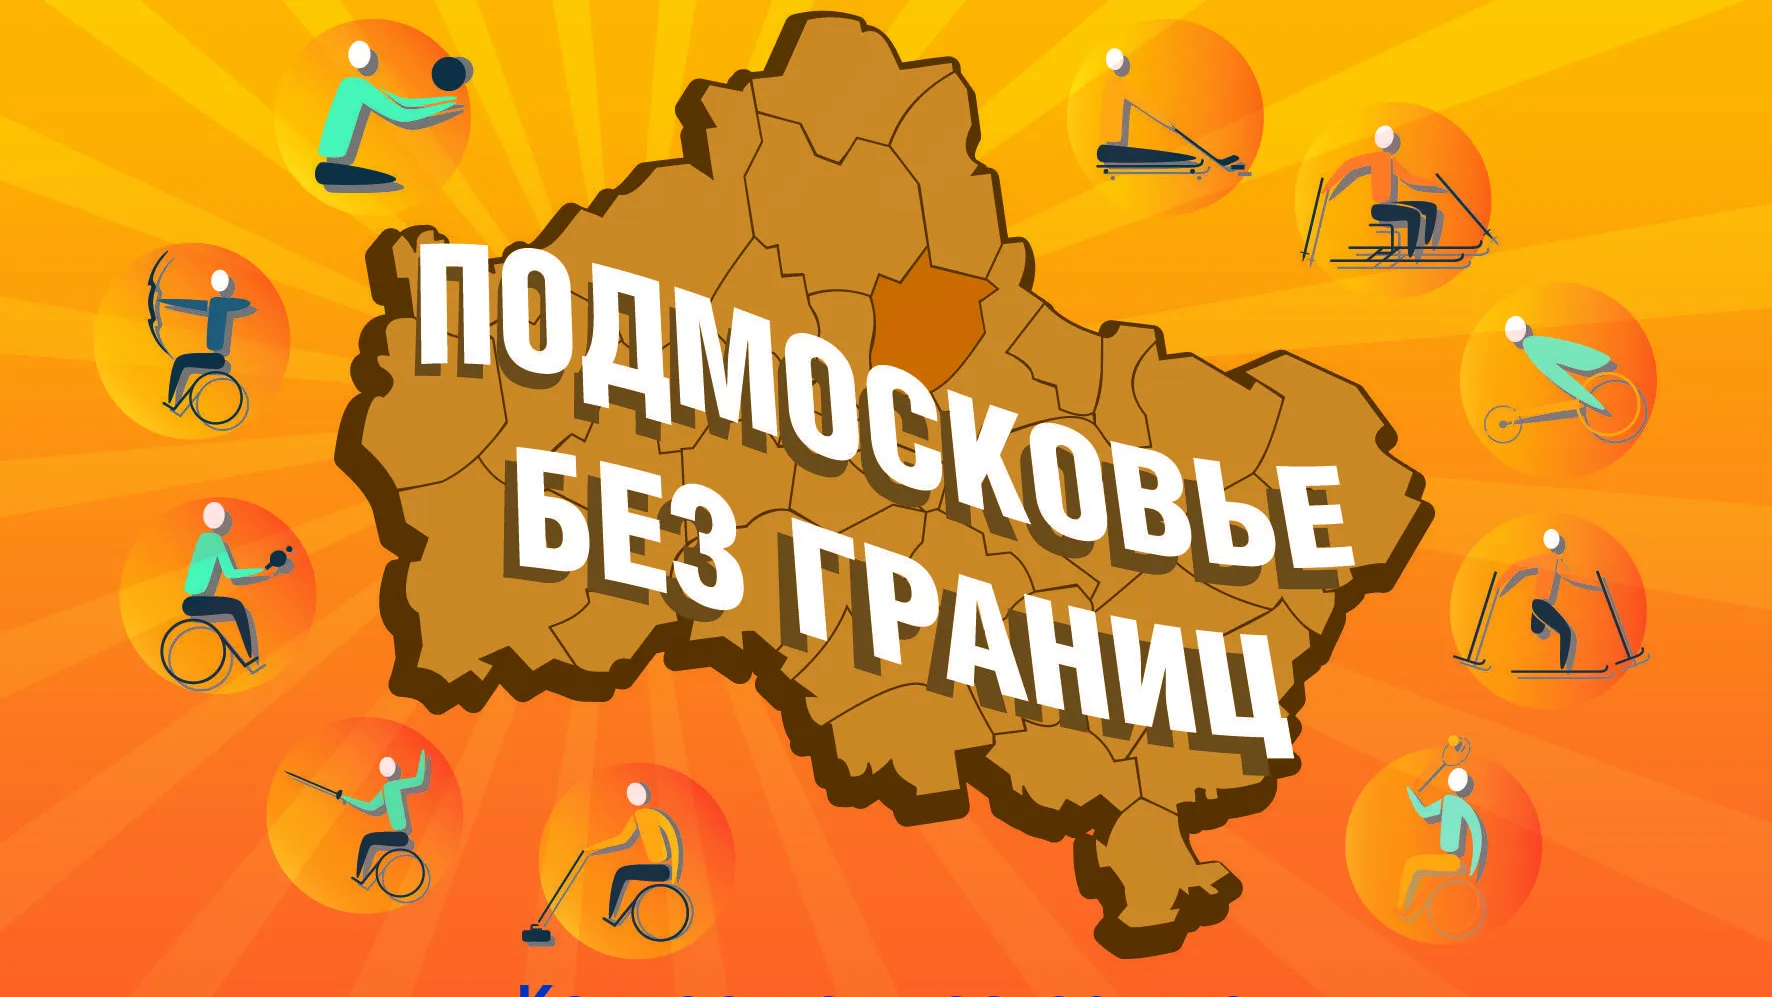 Фестиваль «Подмосковье без границ» пройдет 8 августа в округе Пушкинский